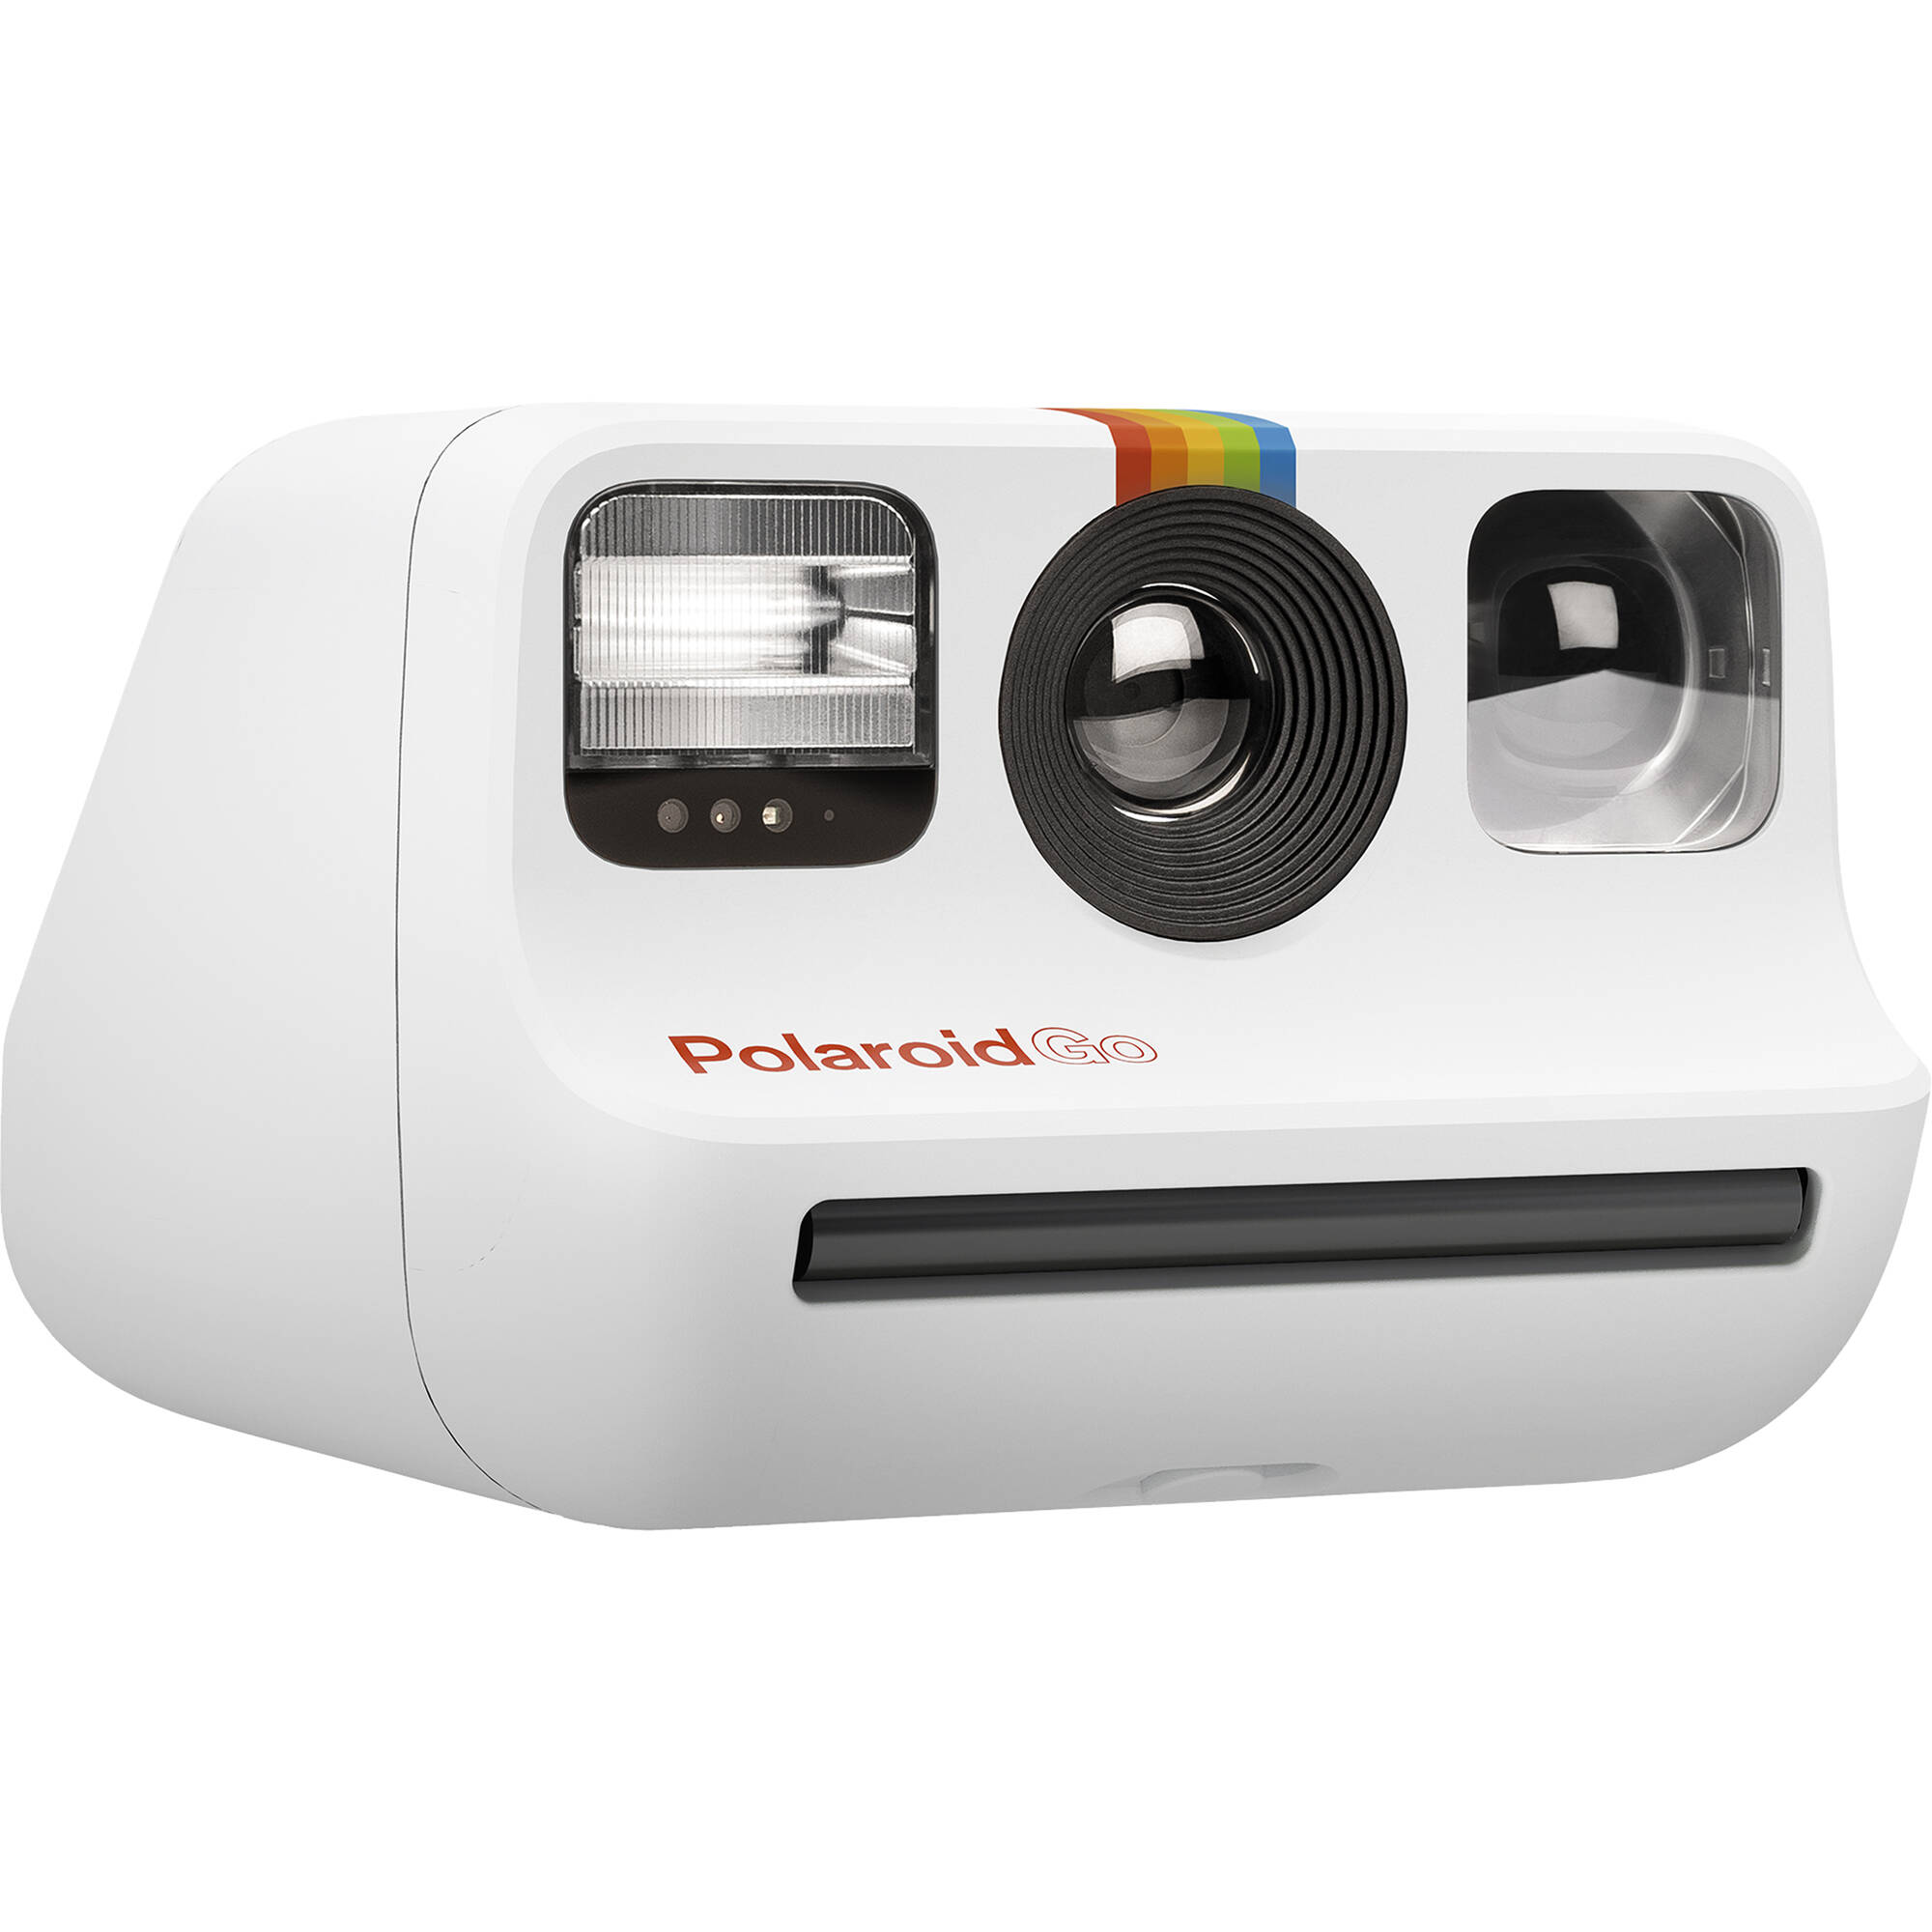 Cámara de película instantánea Polaroid GO (blanca)